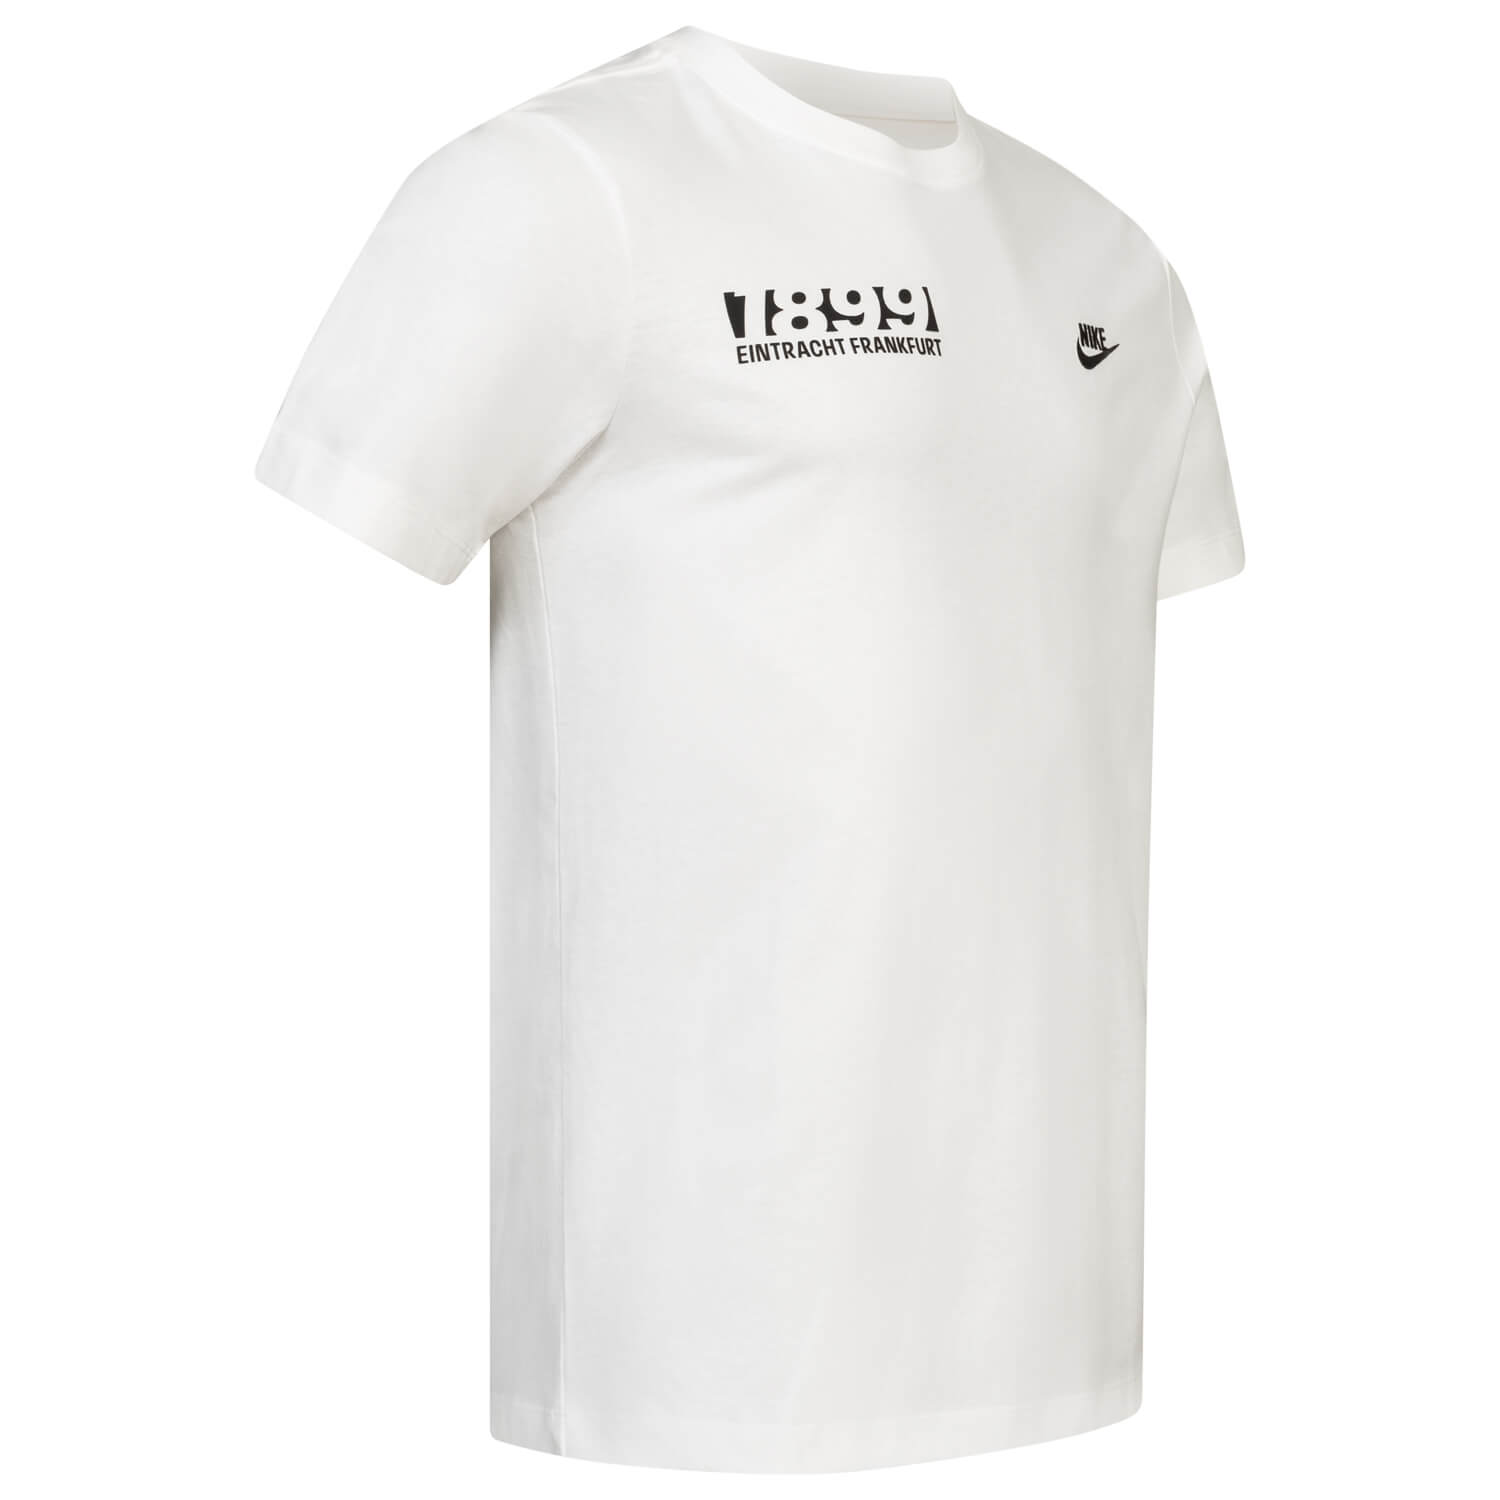 Bild 4: Nike T-Shirt 1899 White